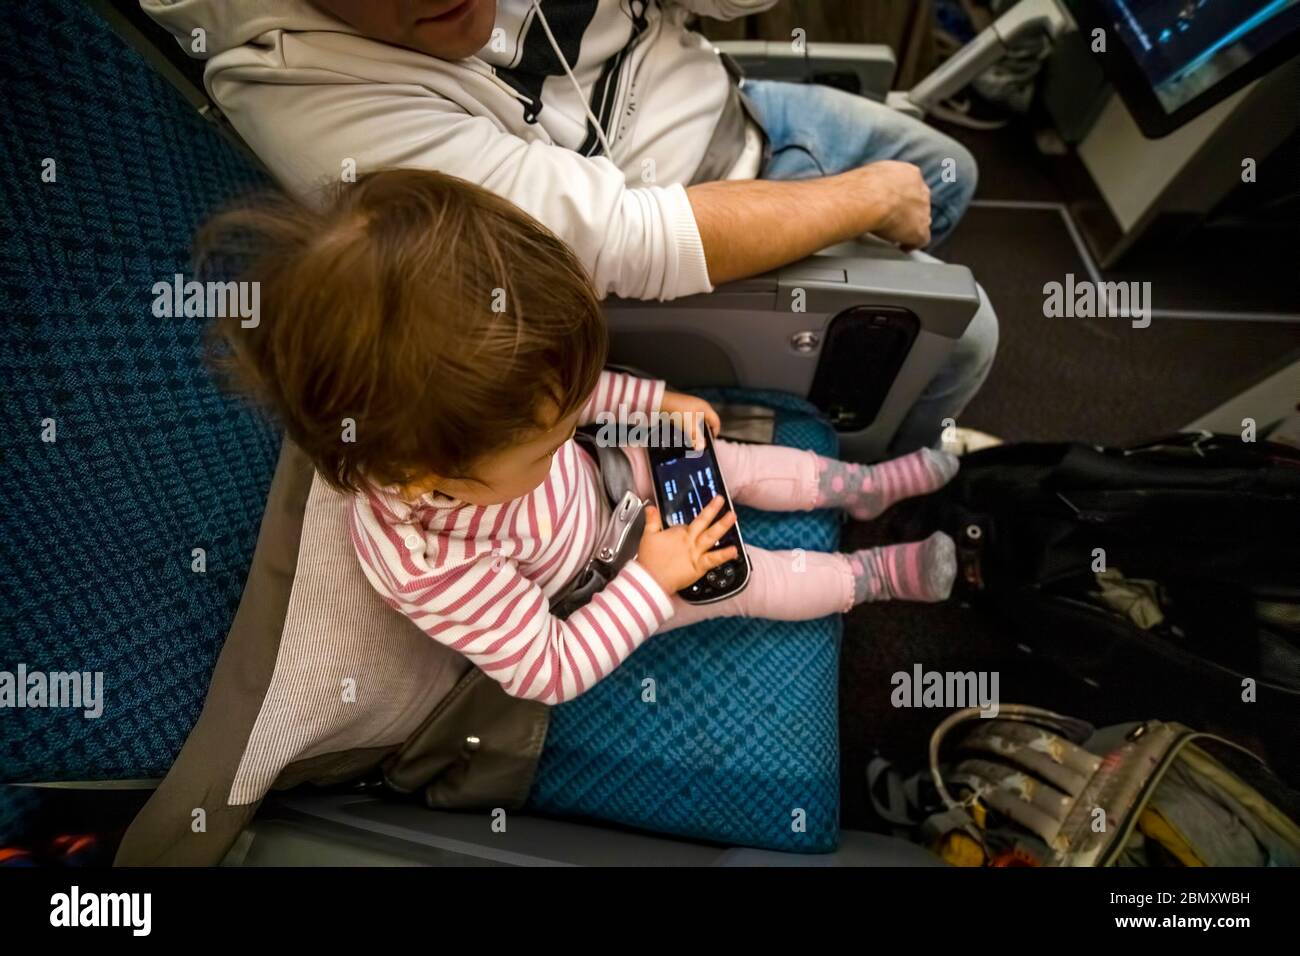 Unterhaltung an Bord des Flugzeugs. Baby sitzen im Flugzeug in den Sitz und spielen Spaß in der Multimedia-System Fernbedienung Stockfoto